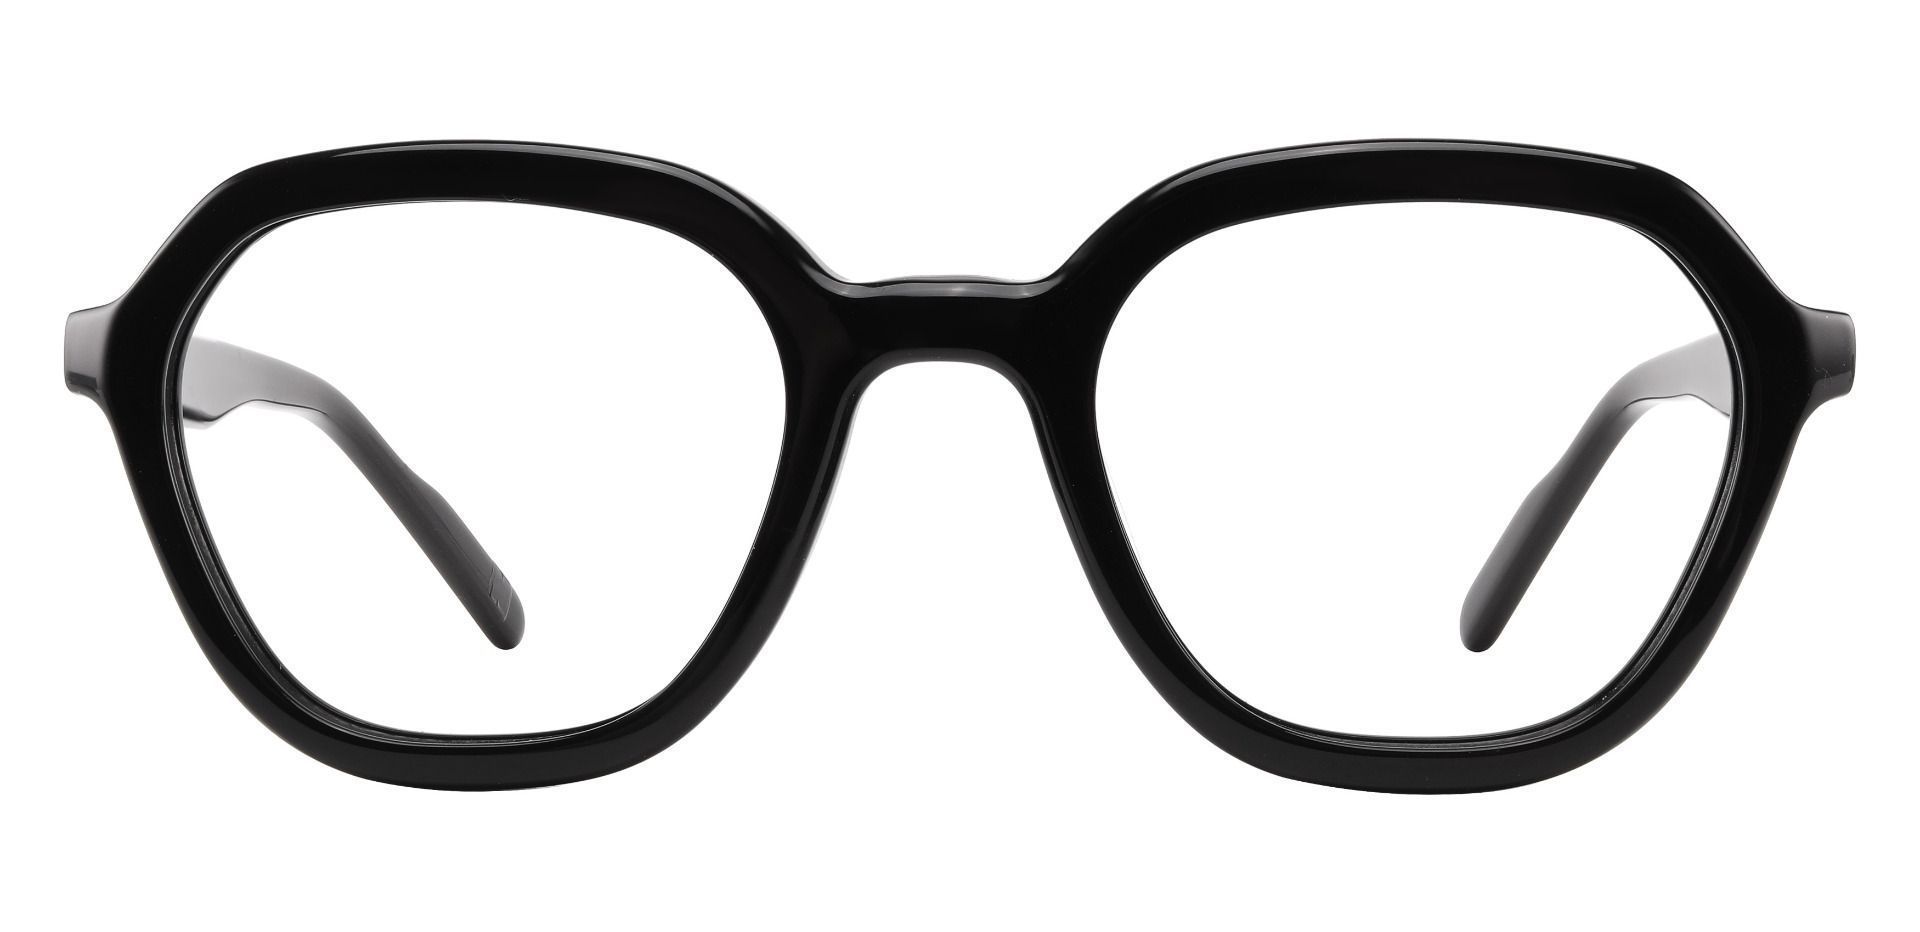 Mandarin Geometric Prescription Glasses - Tortoise | Women's Eyeglasses ...